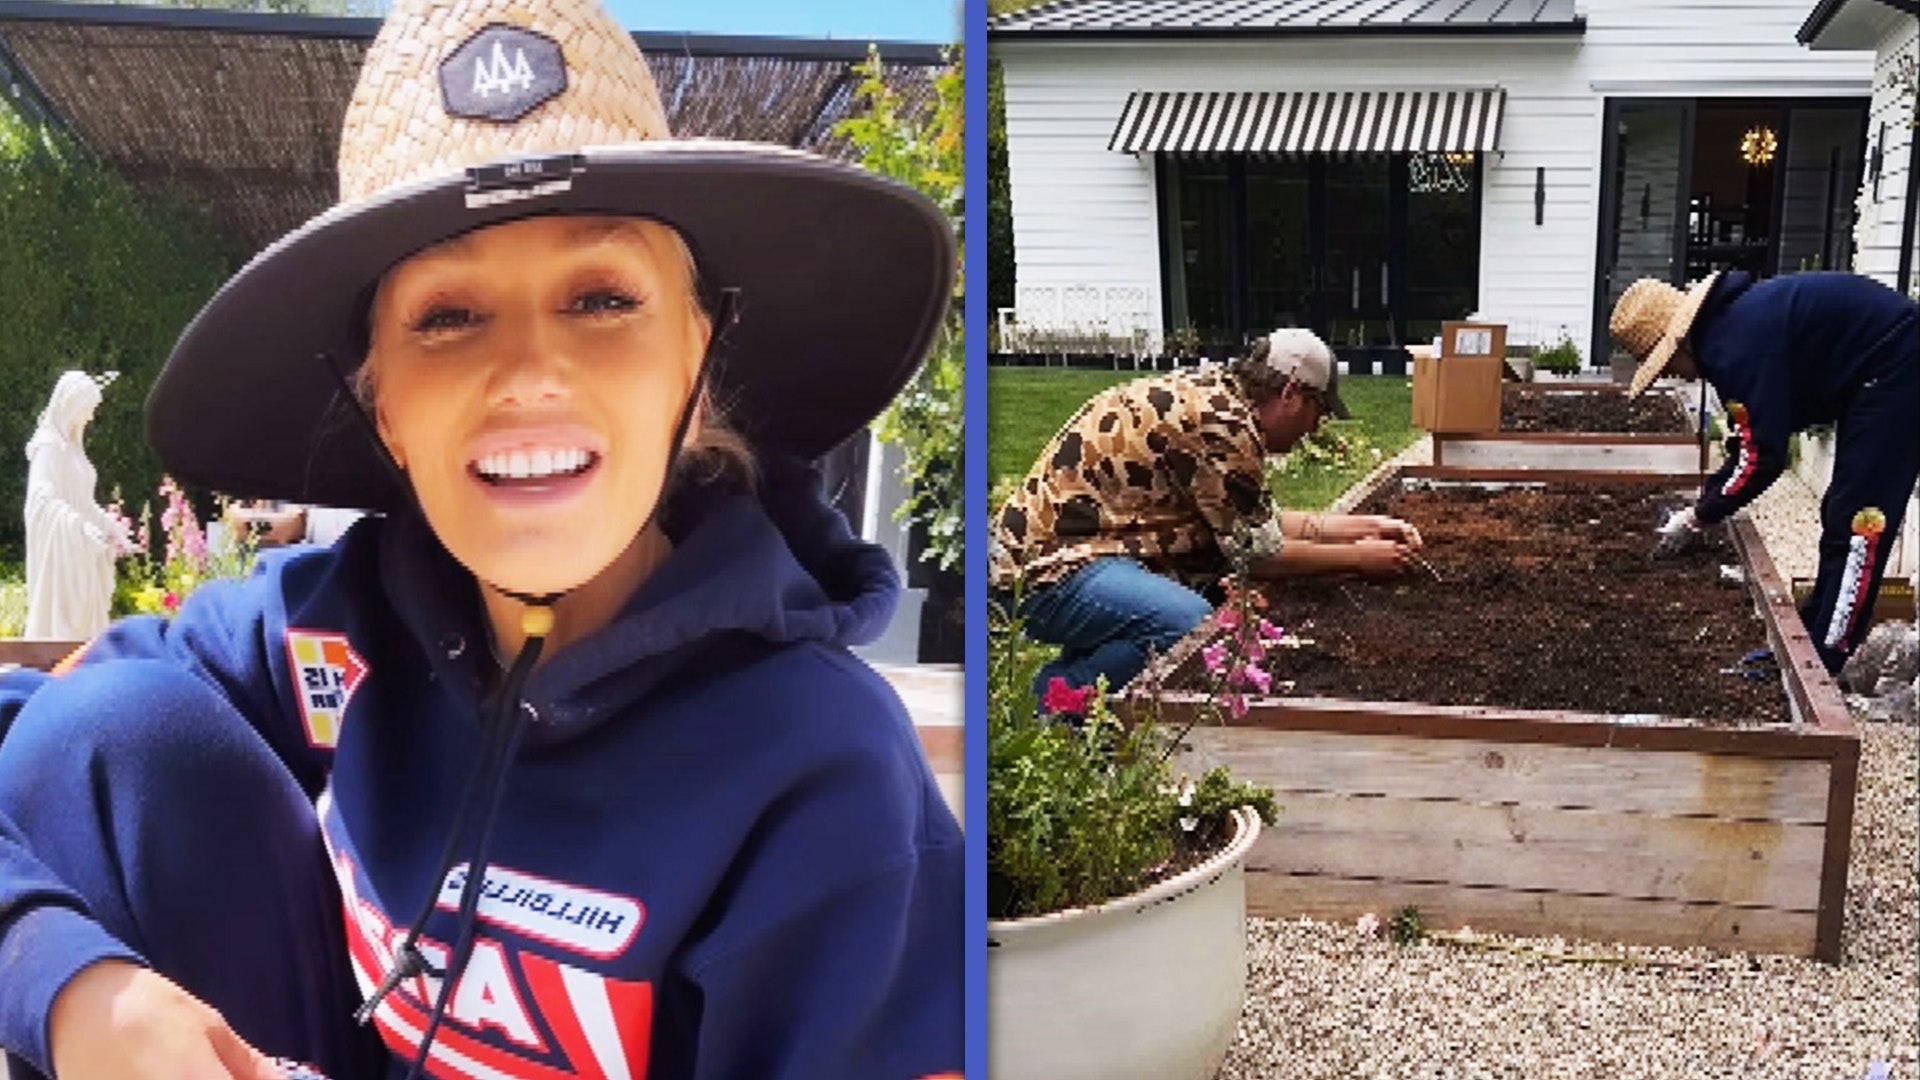 Gwen Stefani and Blake Shelton show off their farming skills around town